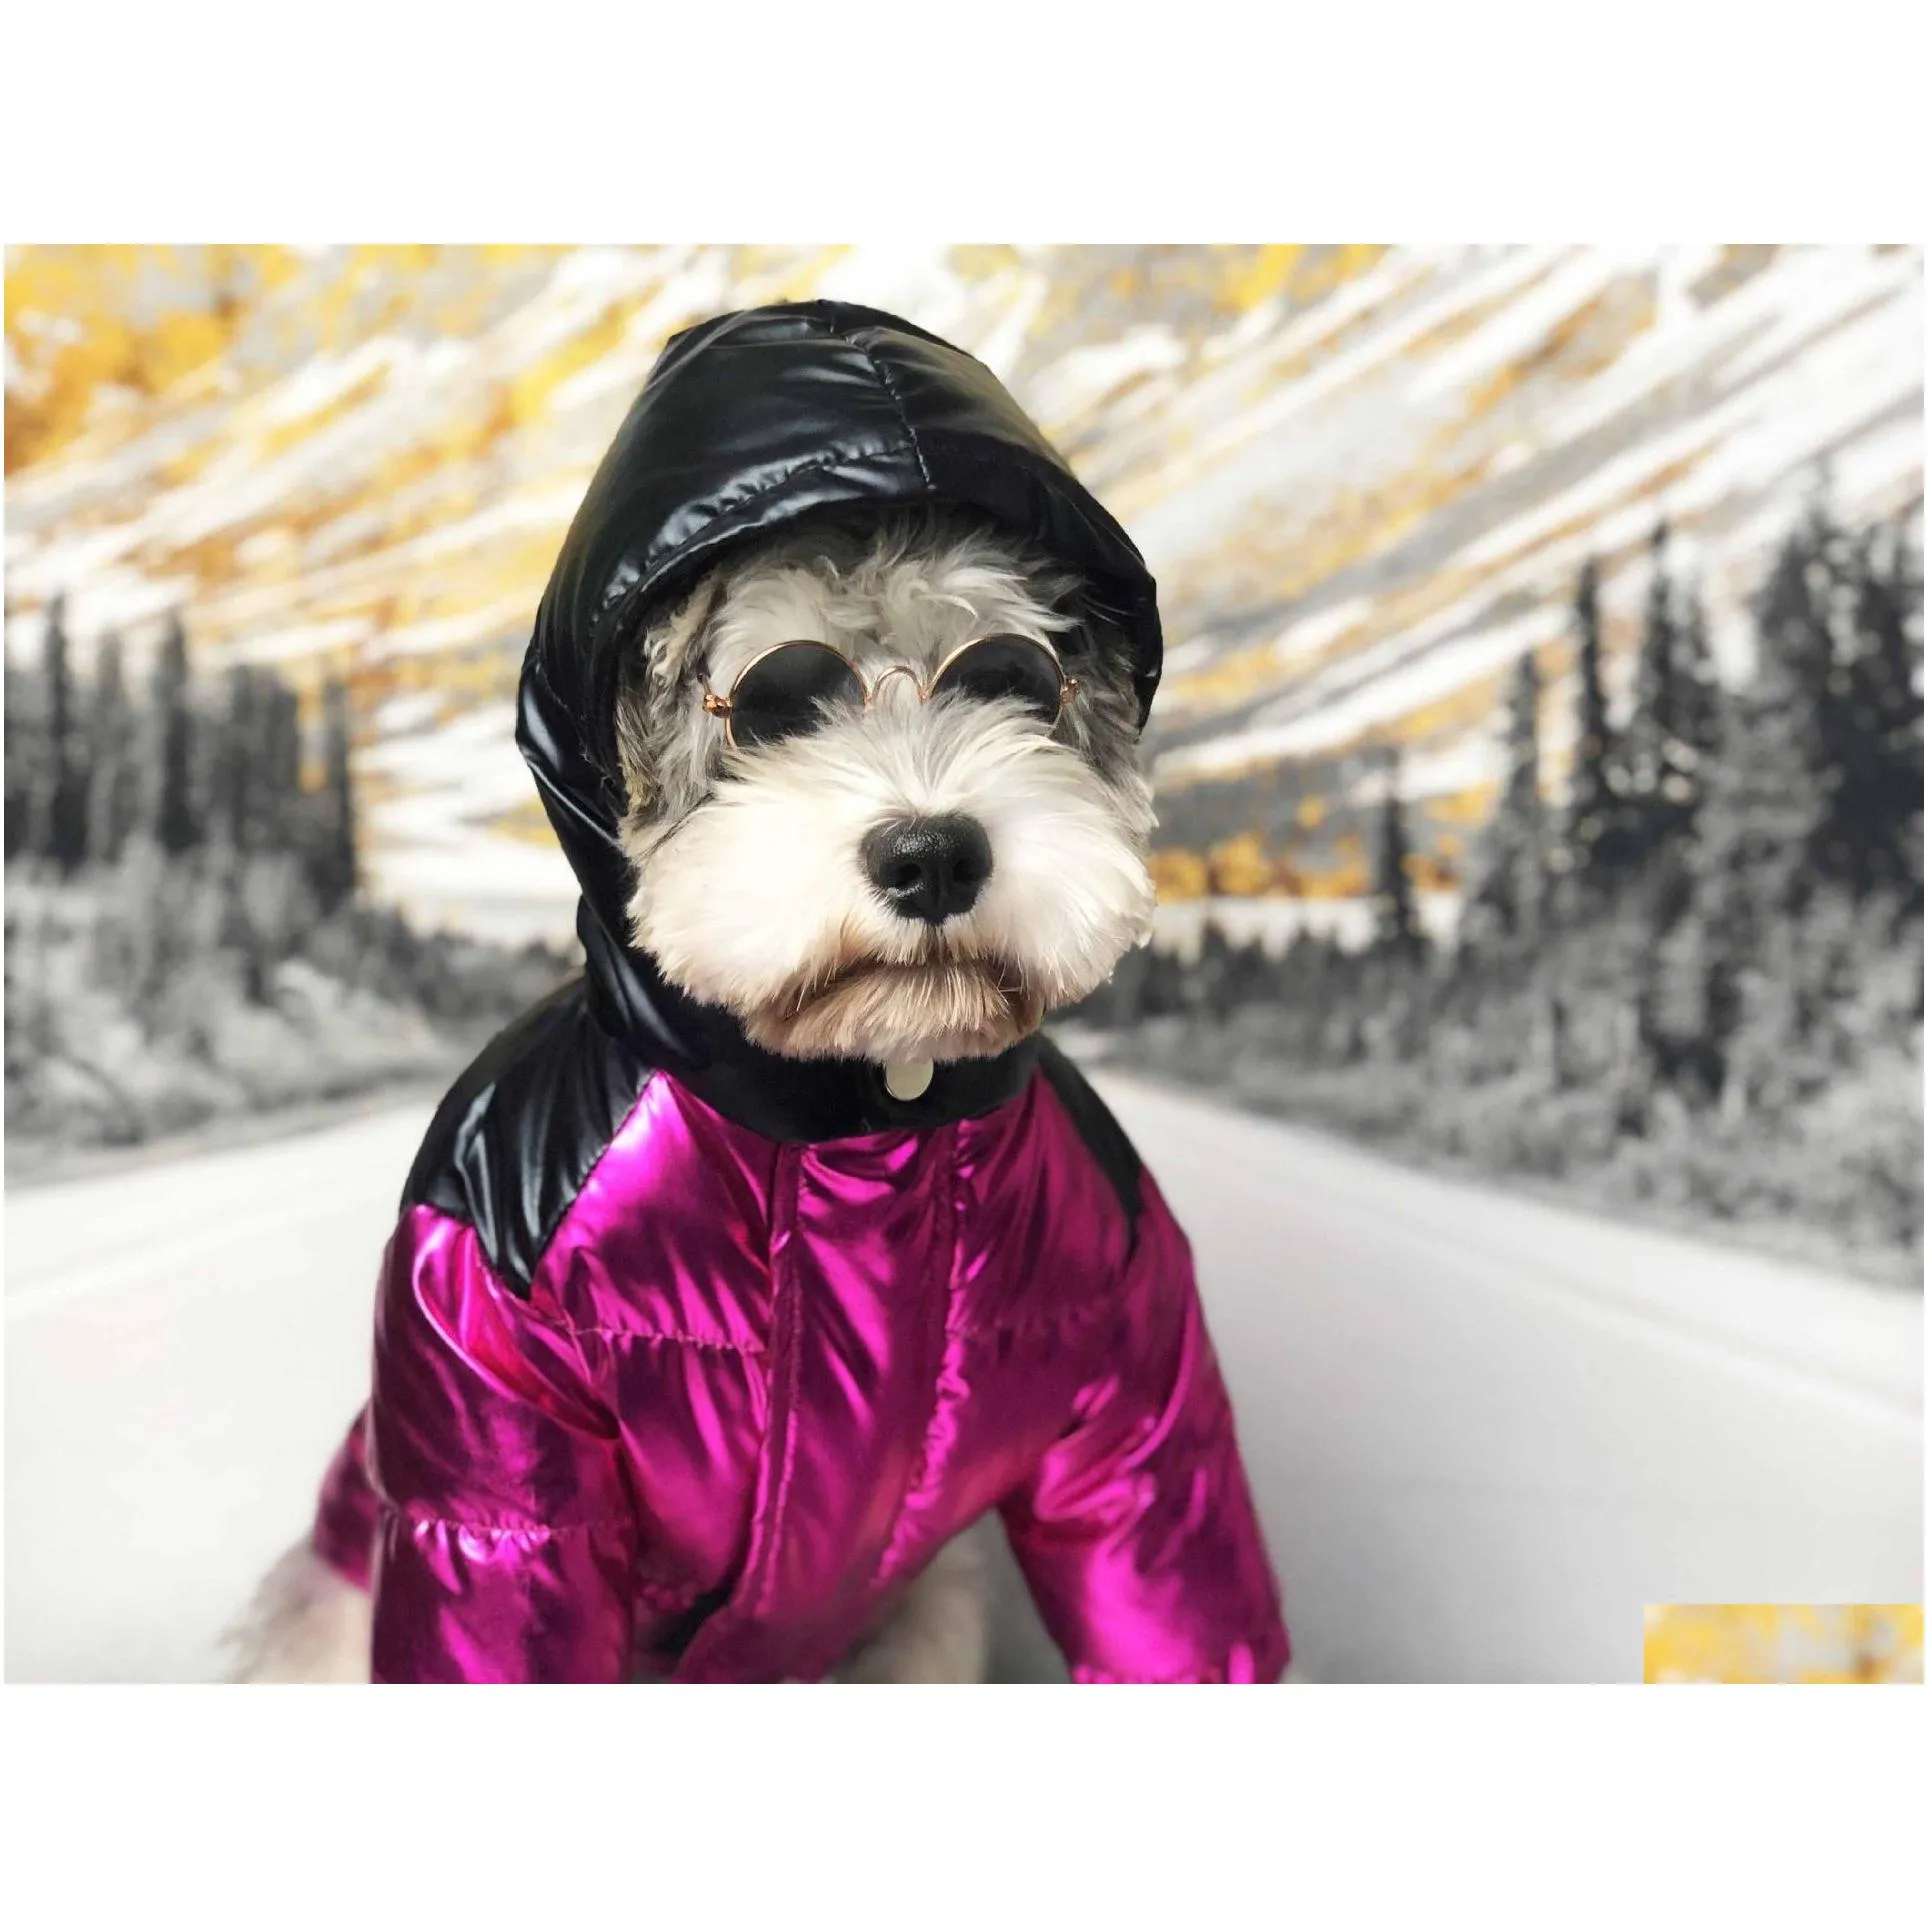 winter popular dog clothes ski suit pet down jacket dog puffer coat so cool handsome dog coat poodle 2 colors 